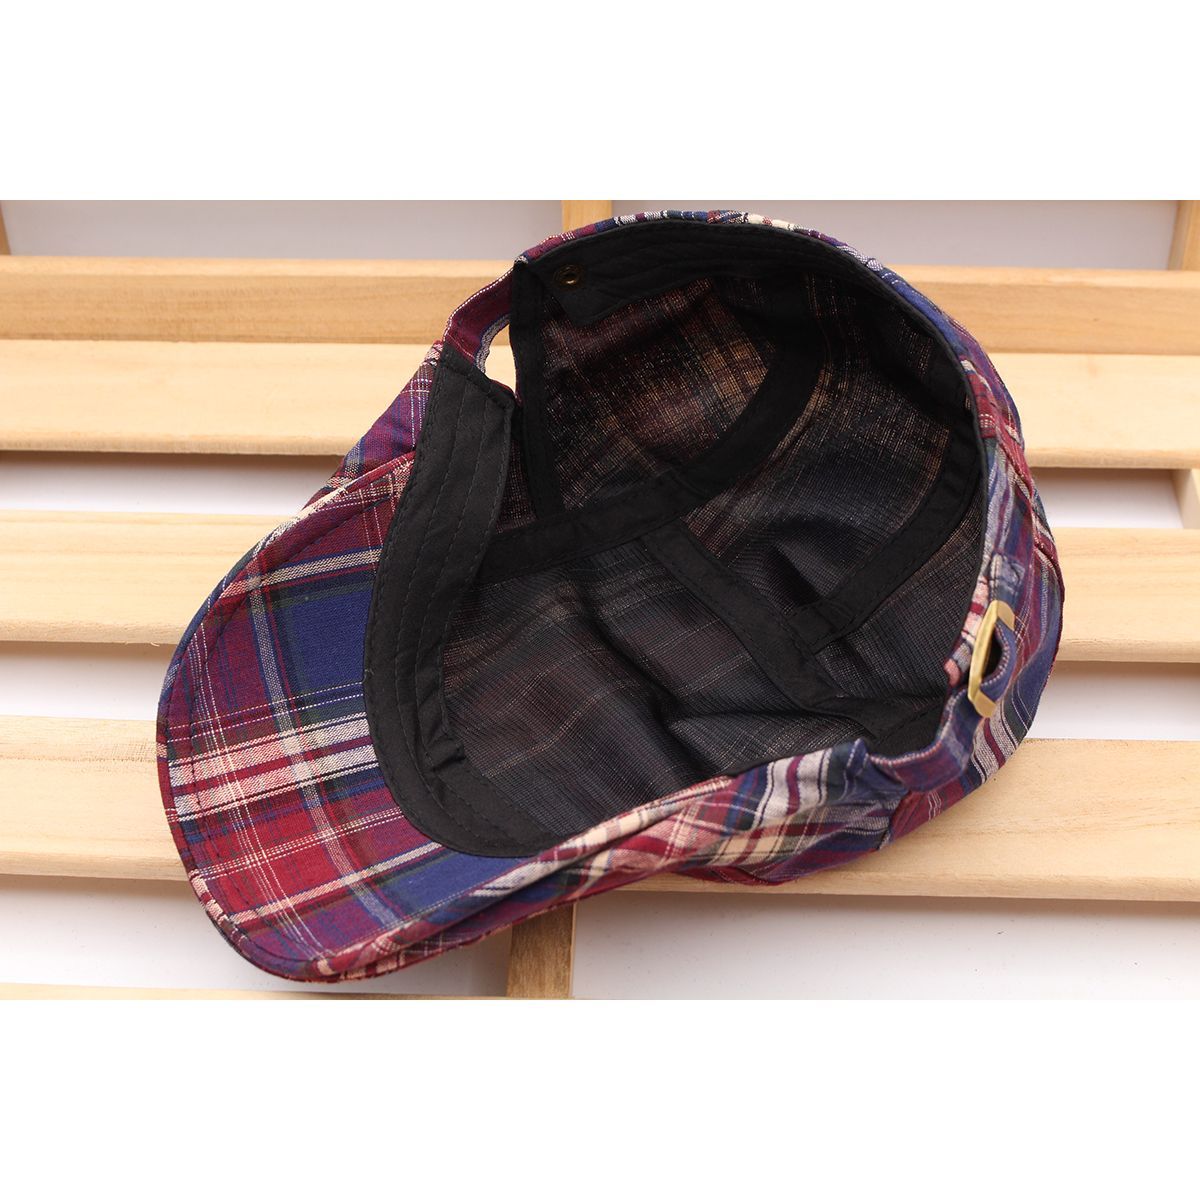 ハンチング帽子 チェック柄 綿 帽子 キャップ 56~59cm メンズ・レディース NV HC27-1